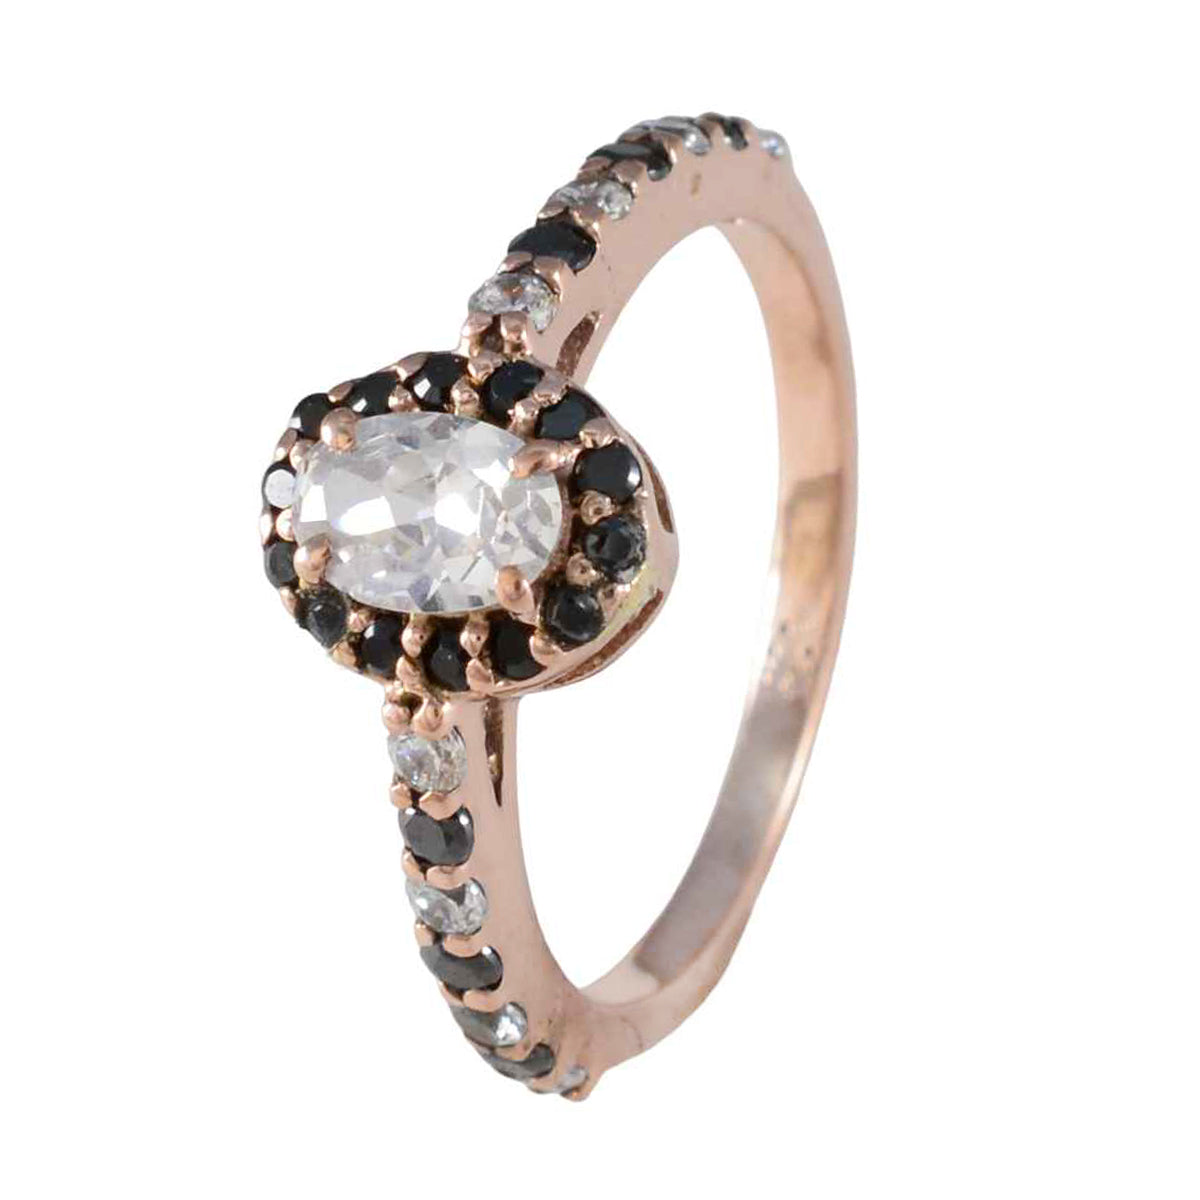 riyo bellissimo anello in argento con placcatura in oro rosa, fede nuziale con pietra di zaffiro blu, forma ovale, montatura a punta